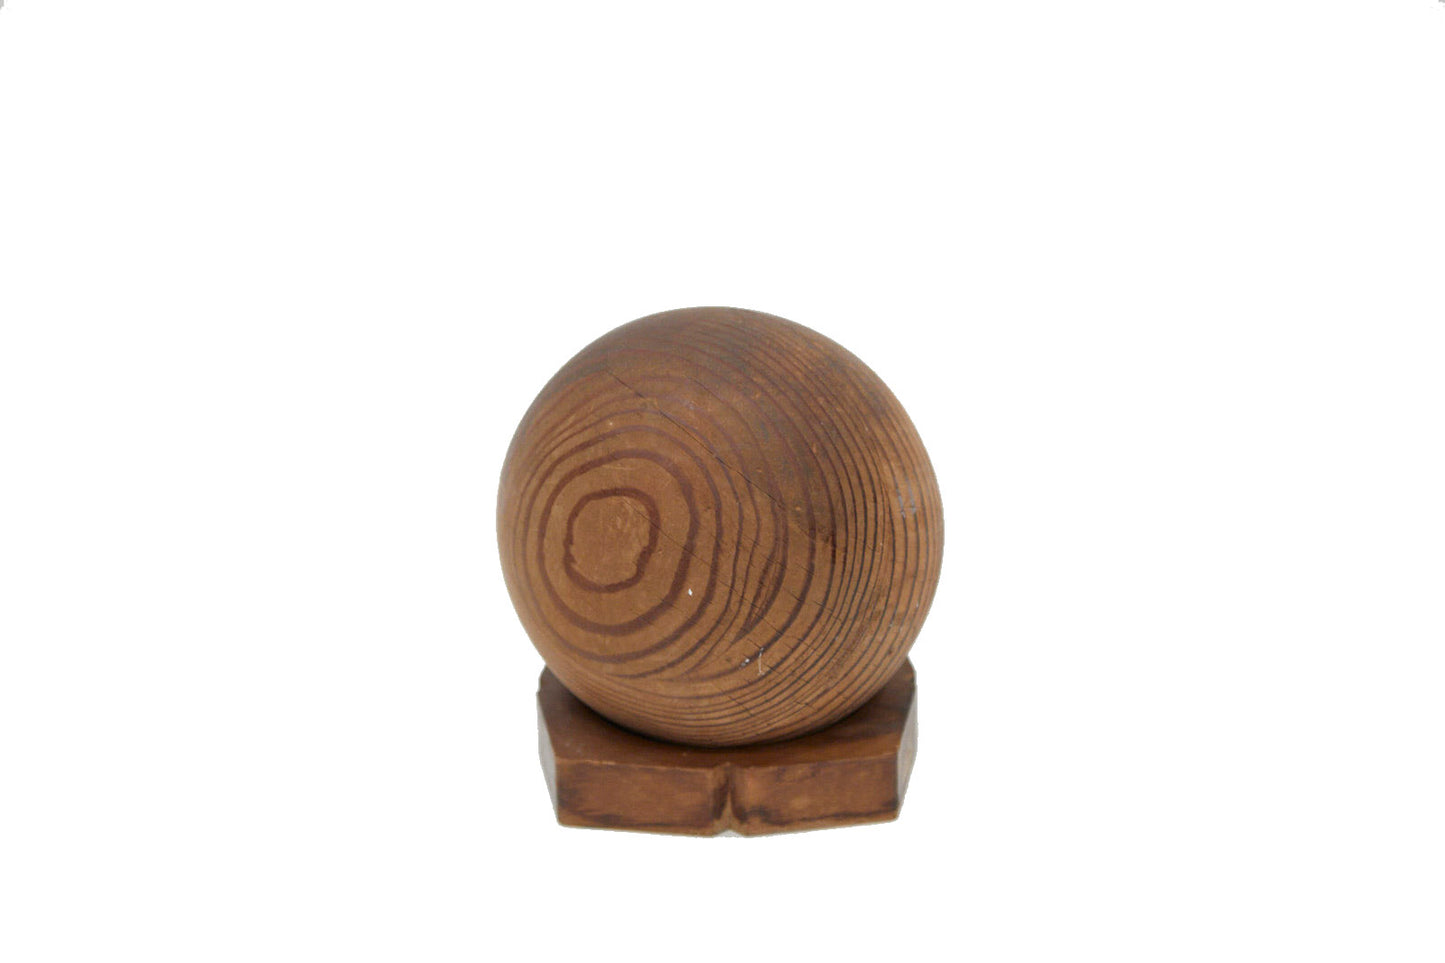 Folk Art Wooden Ball Scultpure